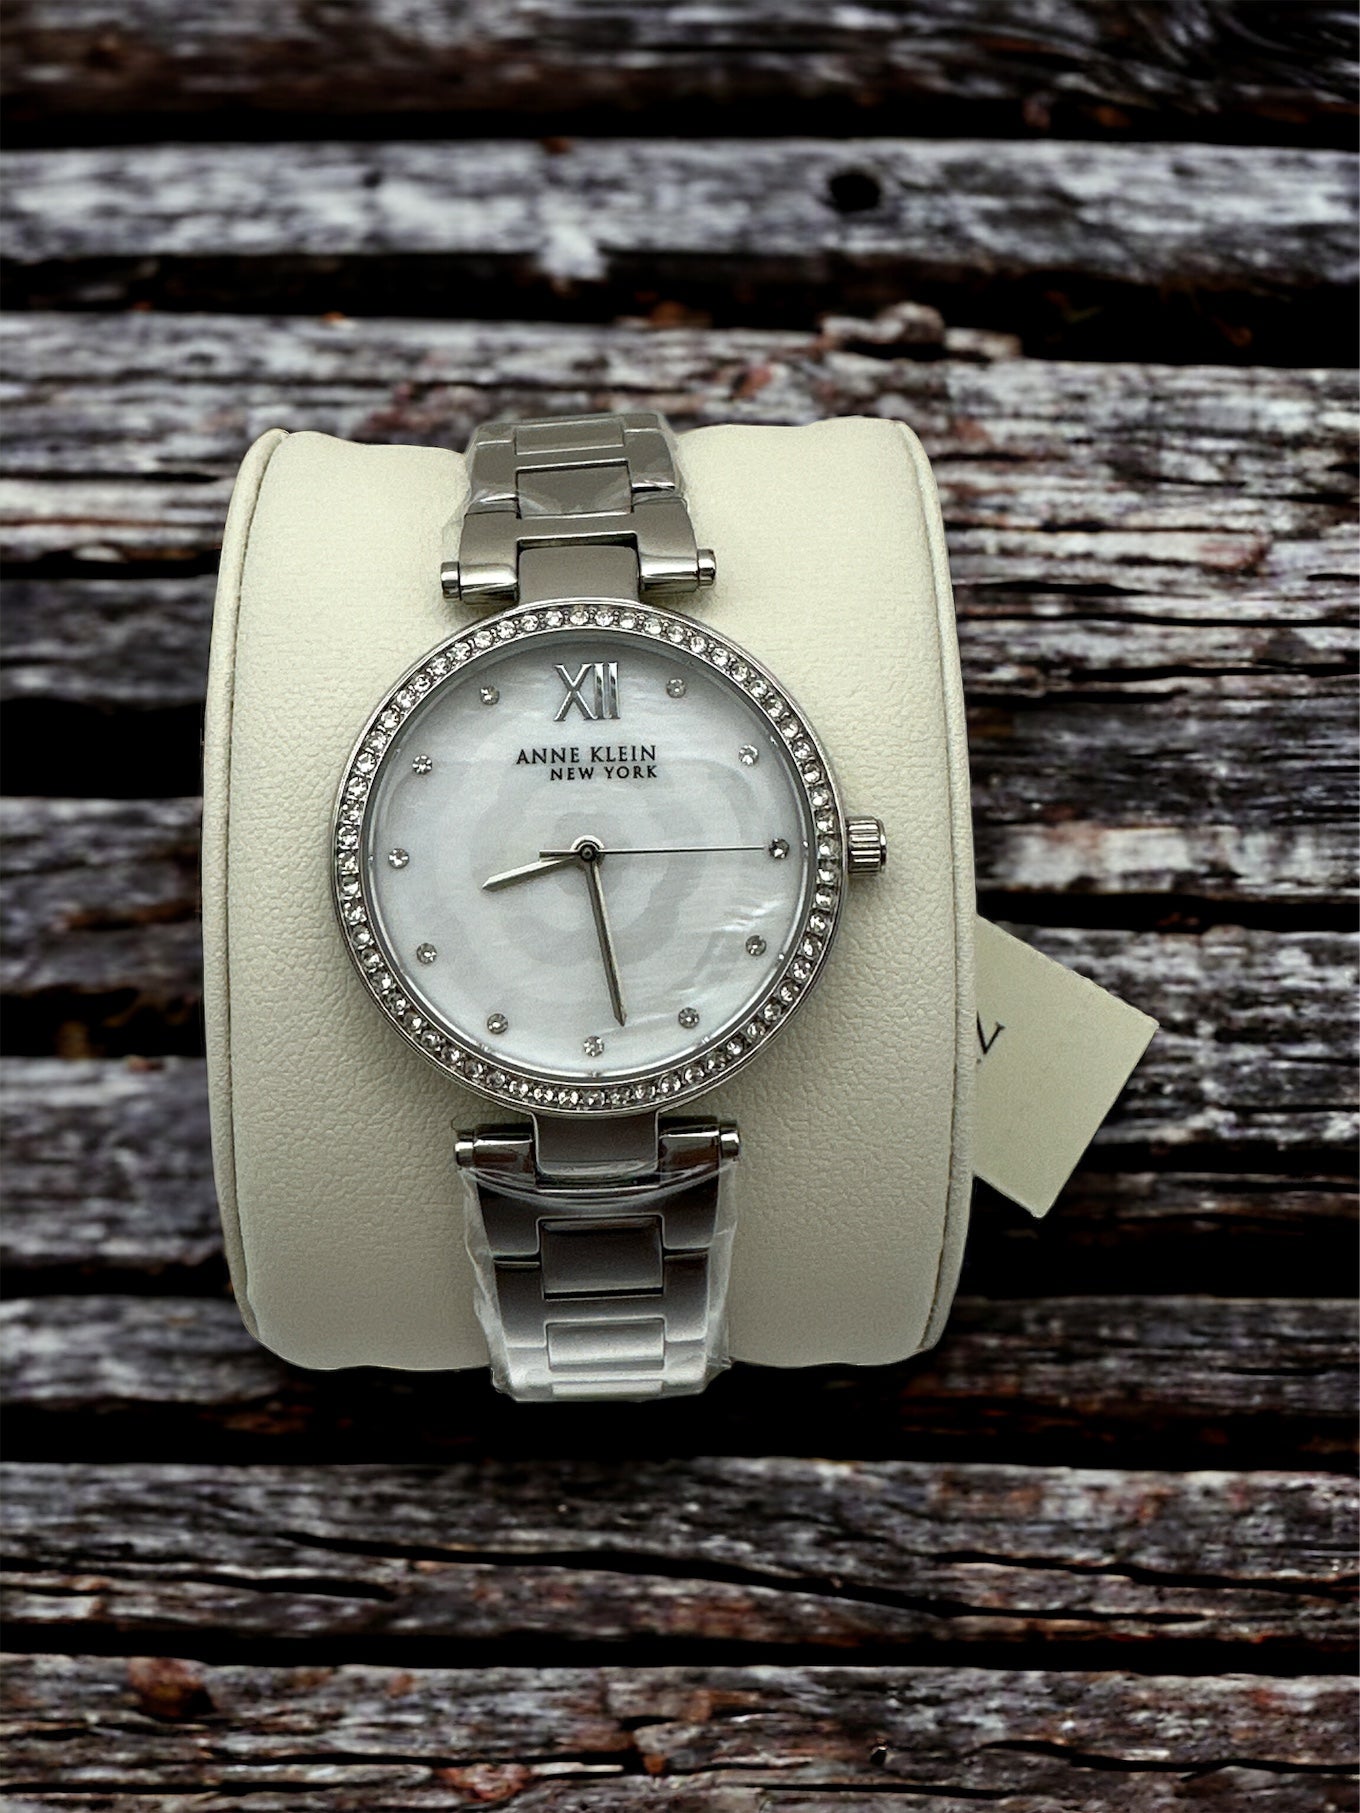 Anne Klein - New York Collection Gemmed Women's Quartz Watch - 12/2353MPSV